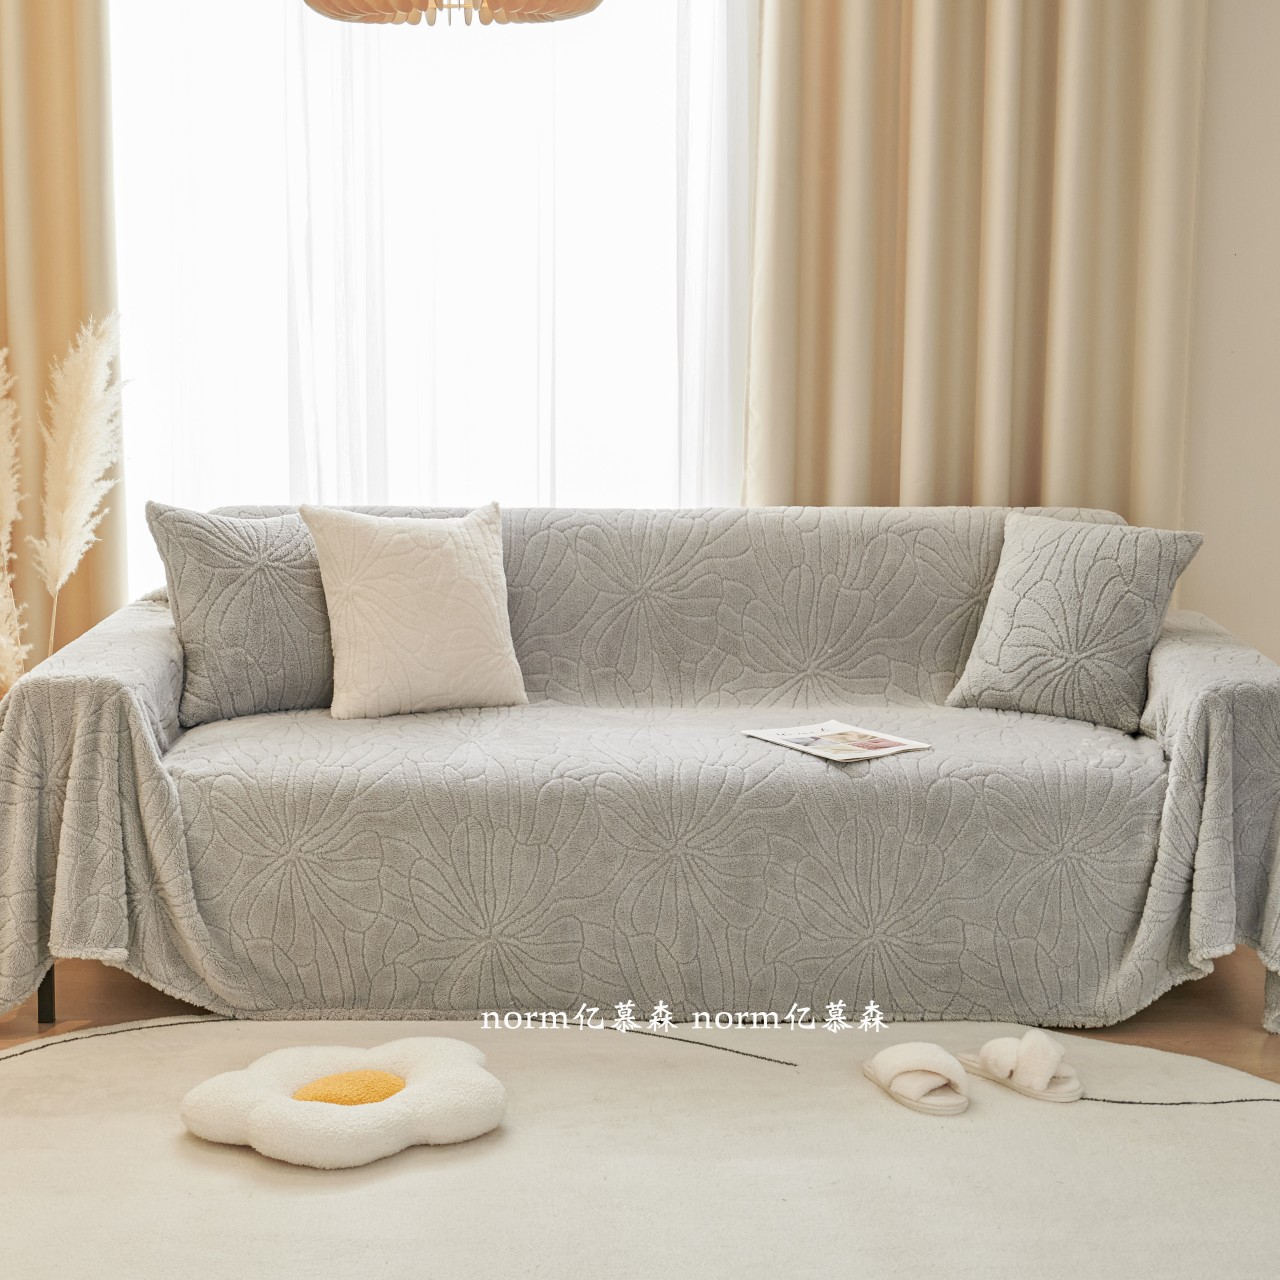 簡約現代沙發墊溫暖毛絨材質北歐風格多種顏色選擇